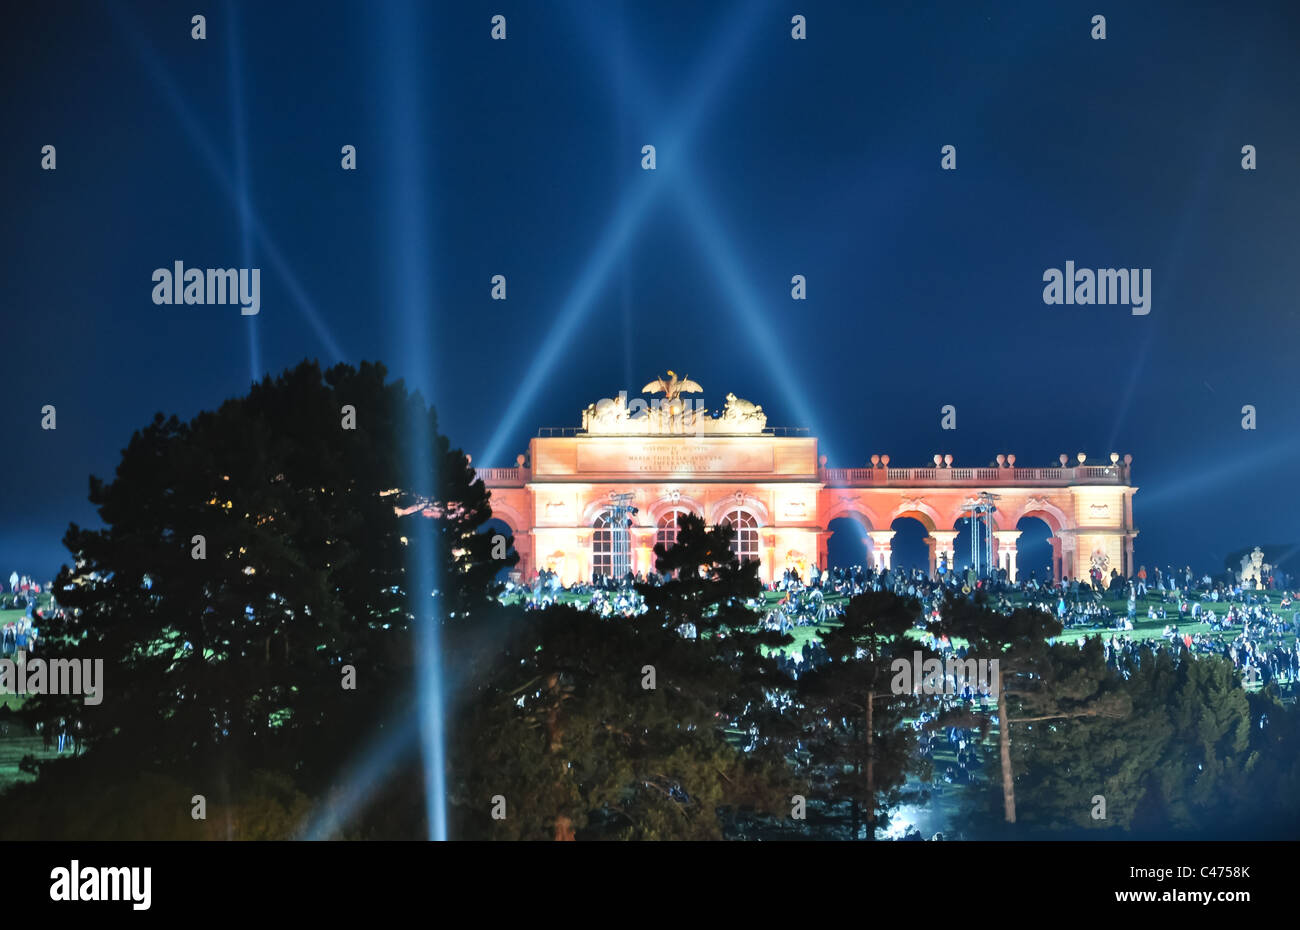 Les effets de lumière à la gloriette à Vienne lors d'un concert philharmonique Banque D'Images